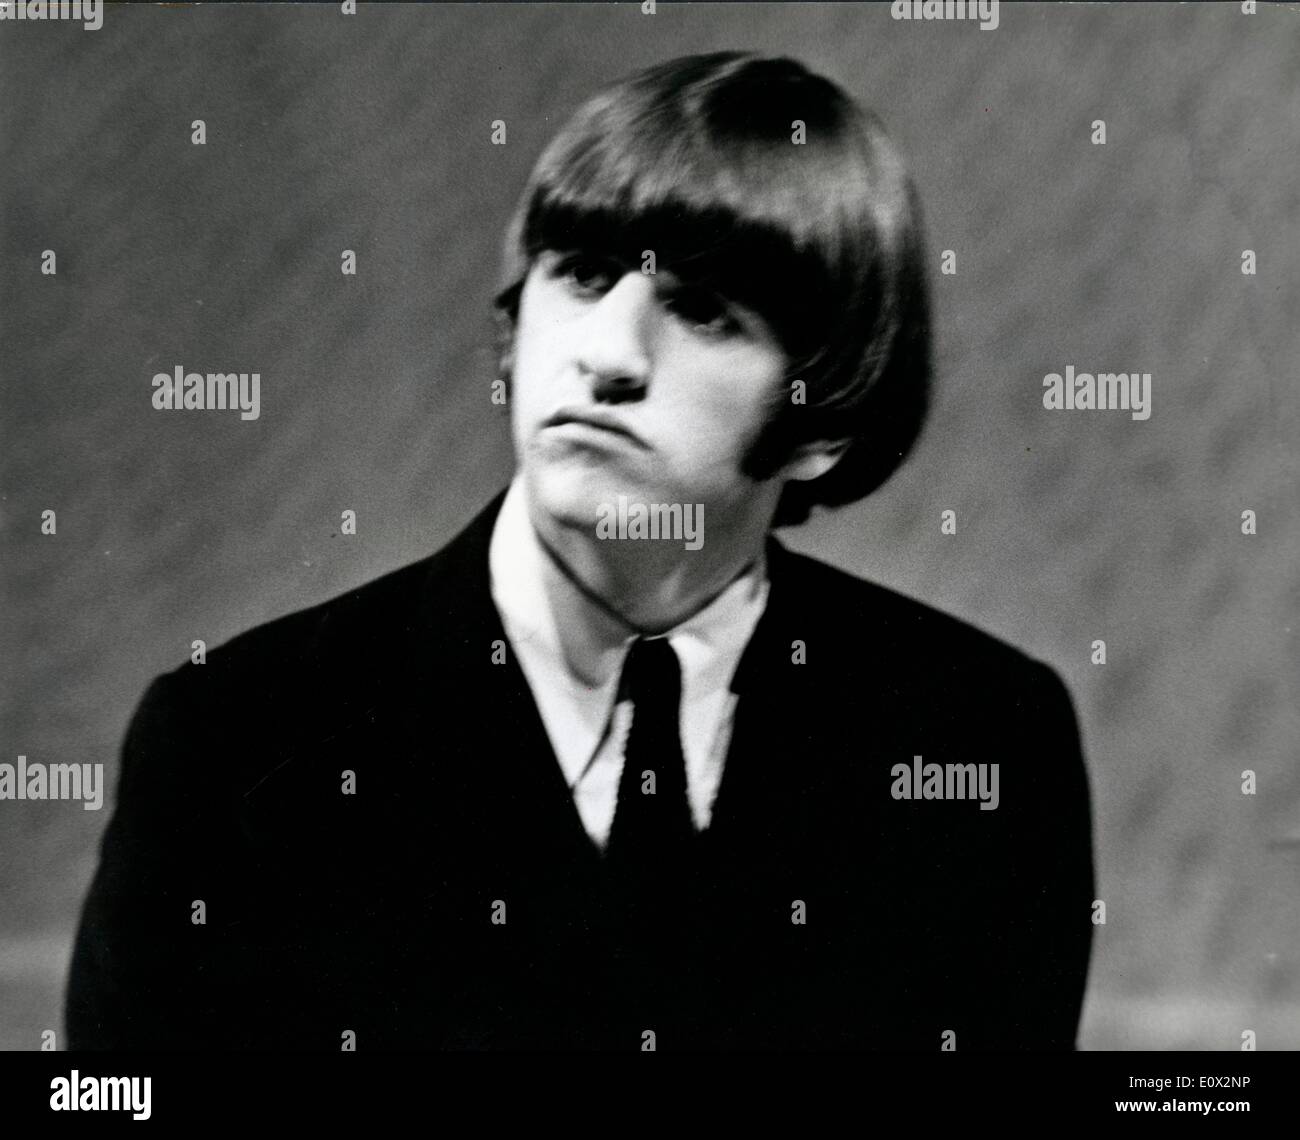 Mitglied der Beatles Ringo Starr in Anzug und Krawatte Stockfotografie -  Alamy